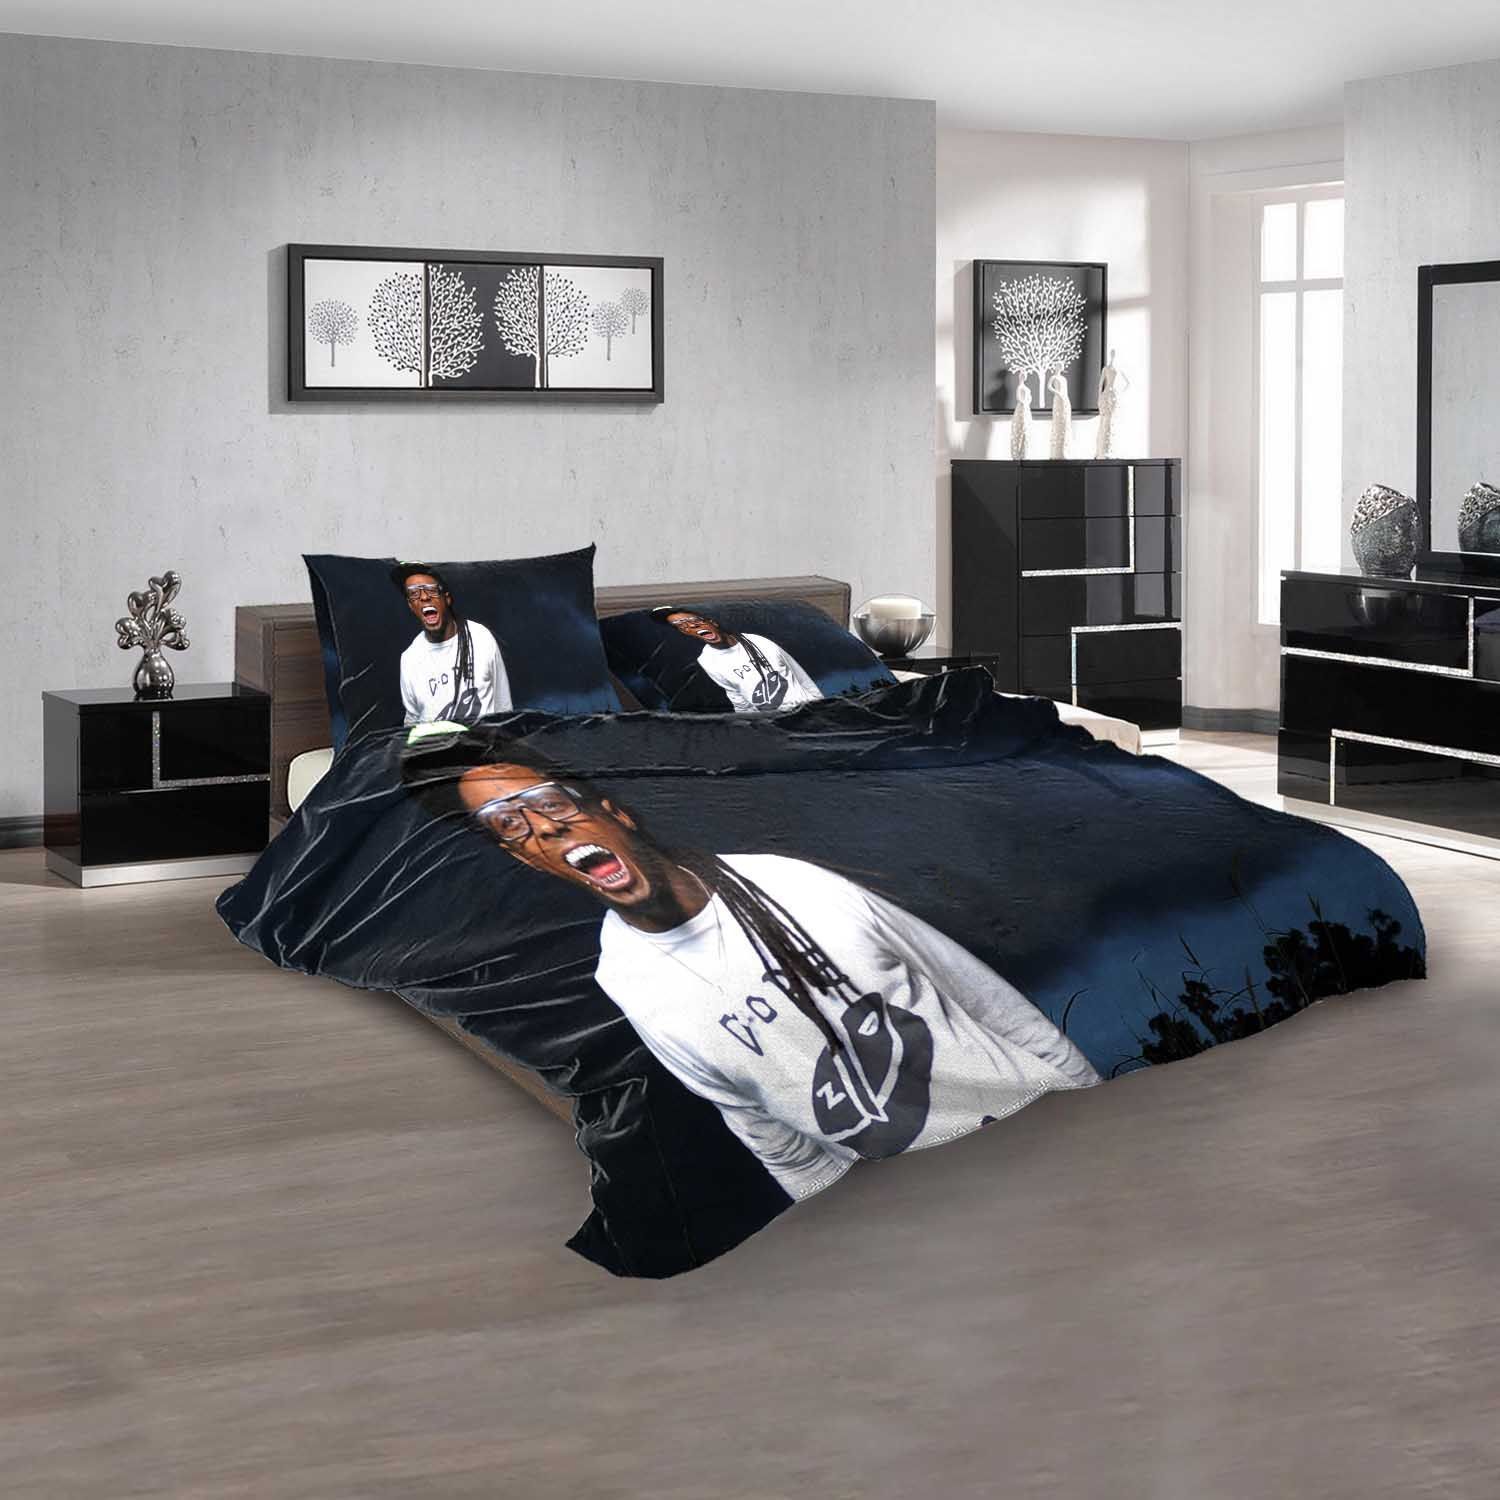 Famous Rapper Lil Wayne N Bedding Sets